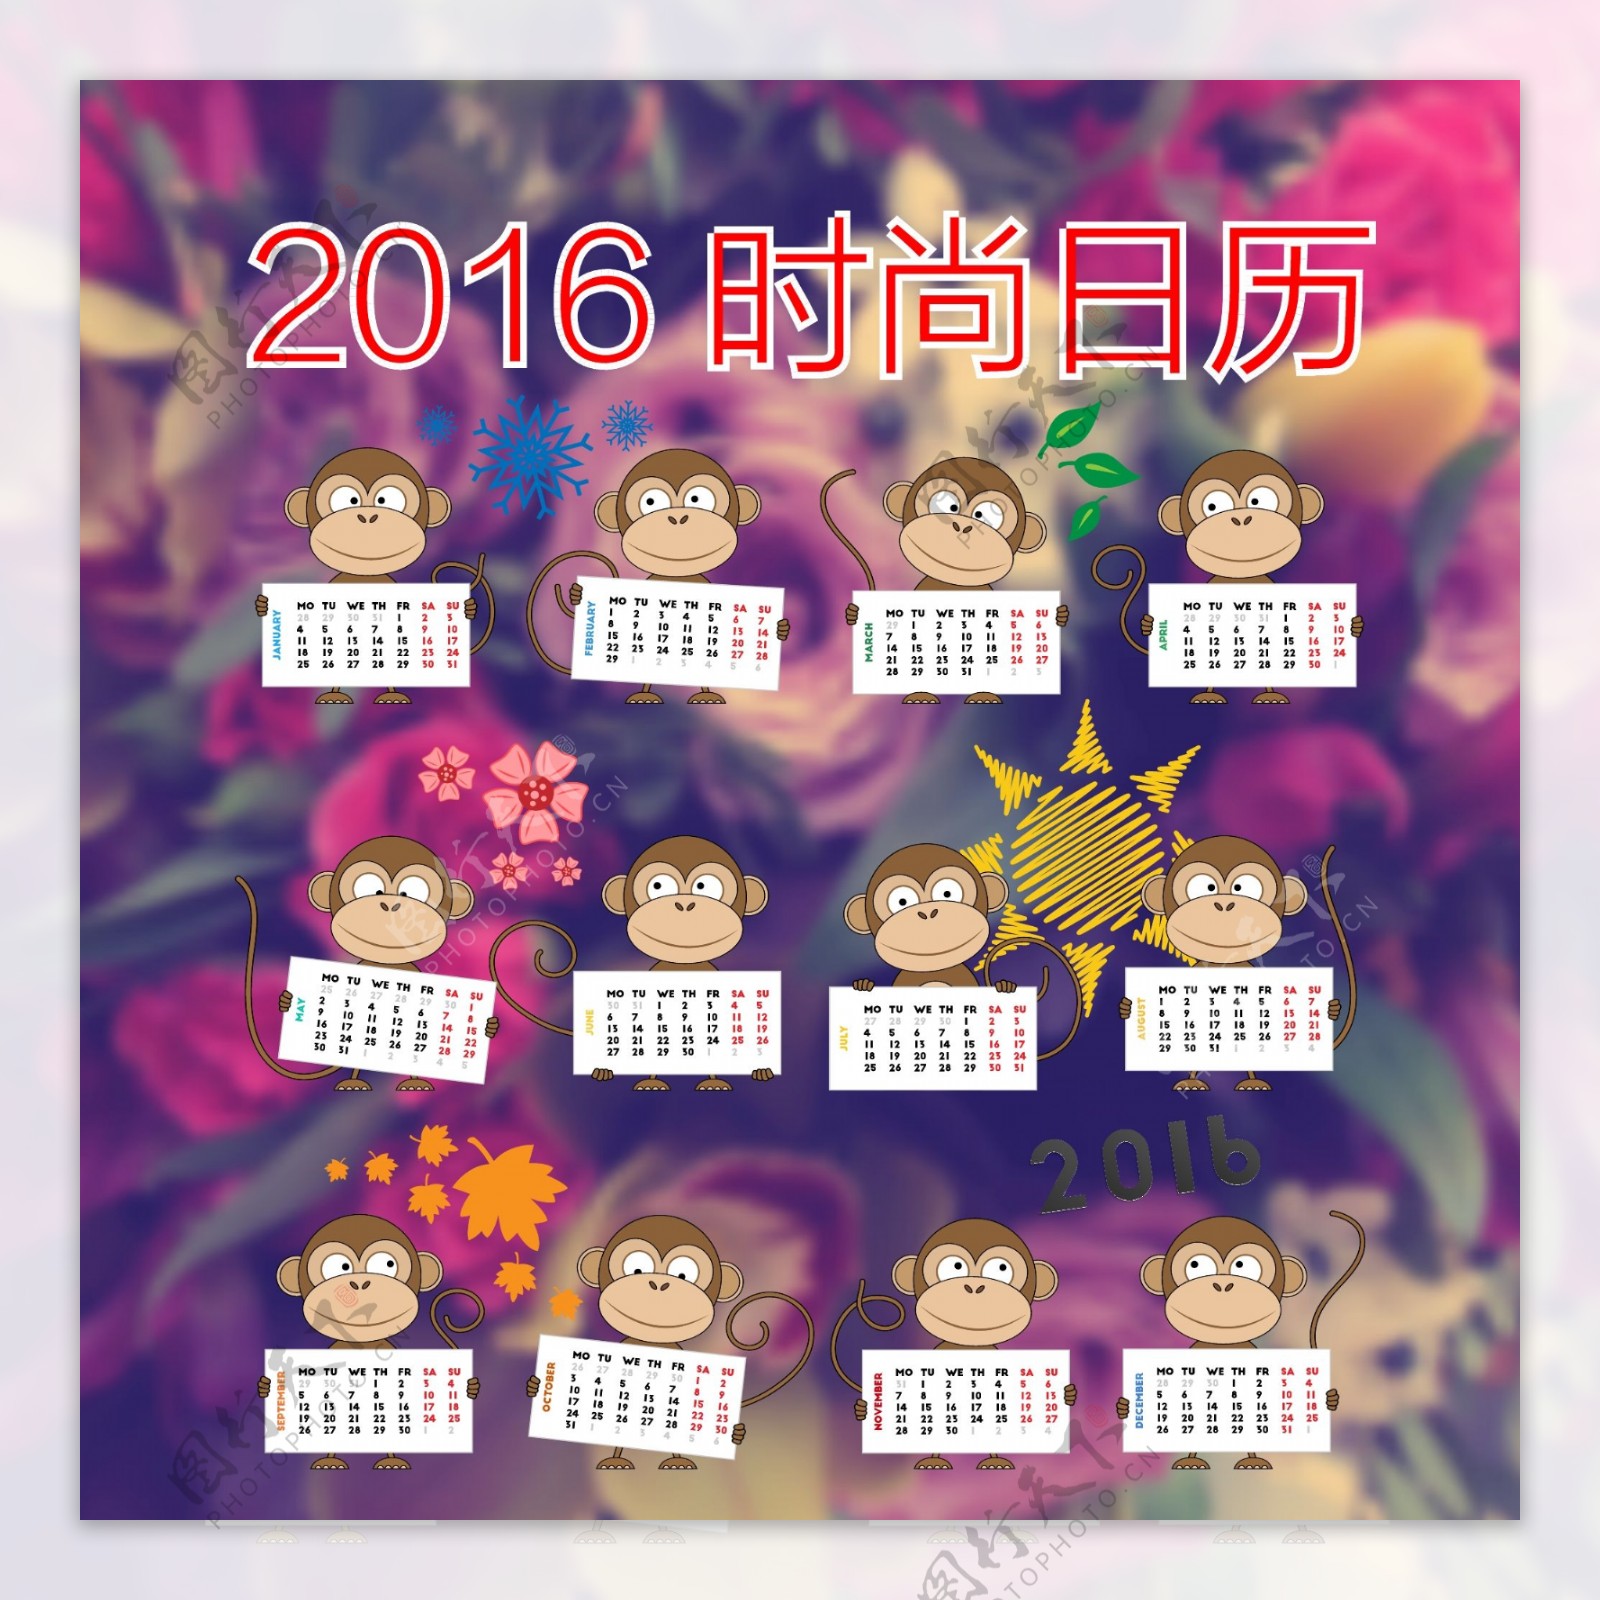 2016时尚猴子日历